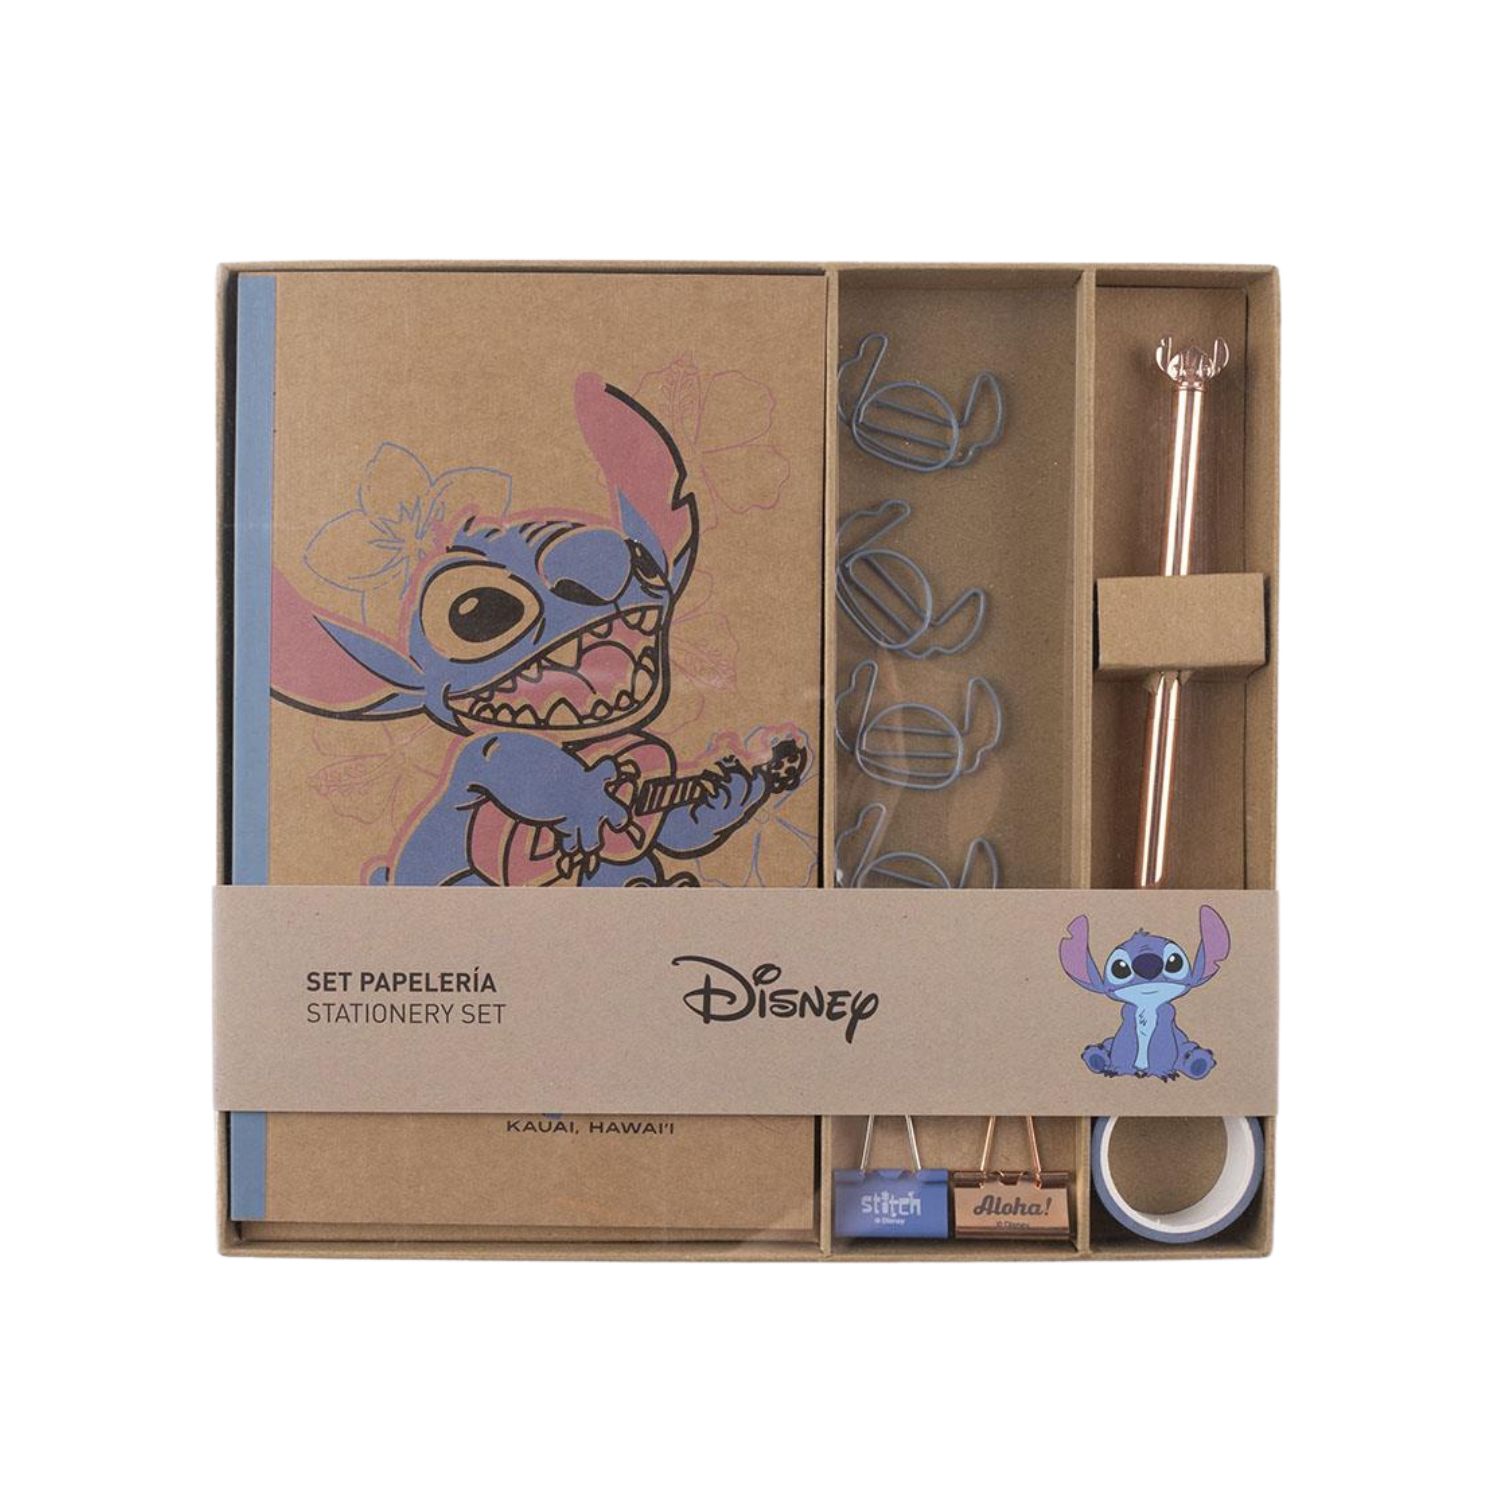 Disney Stitch Stationery Set